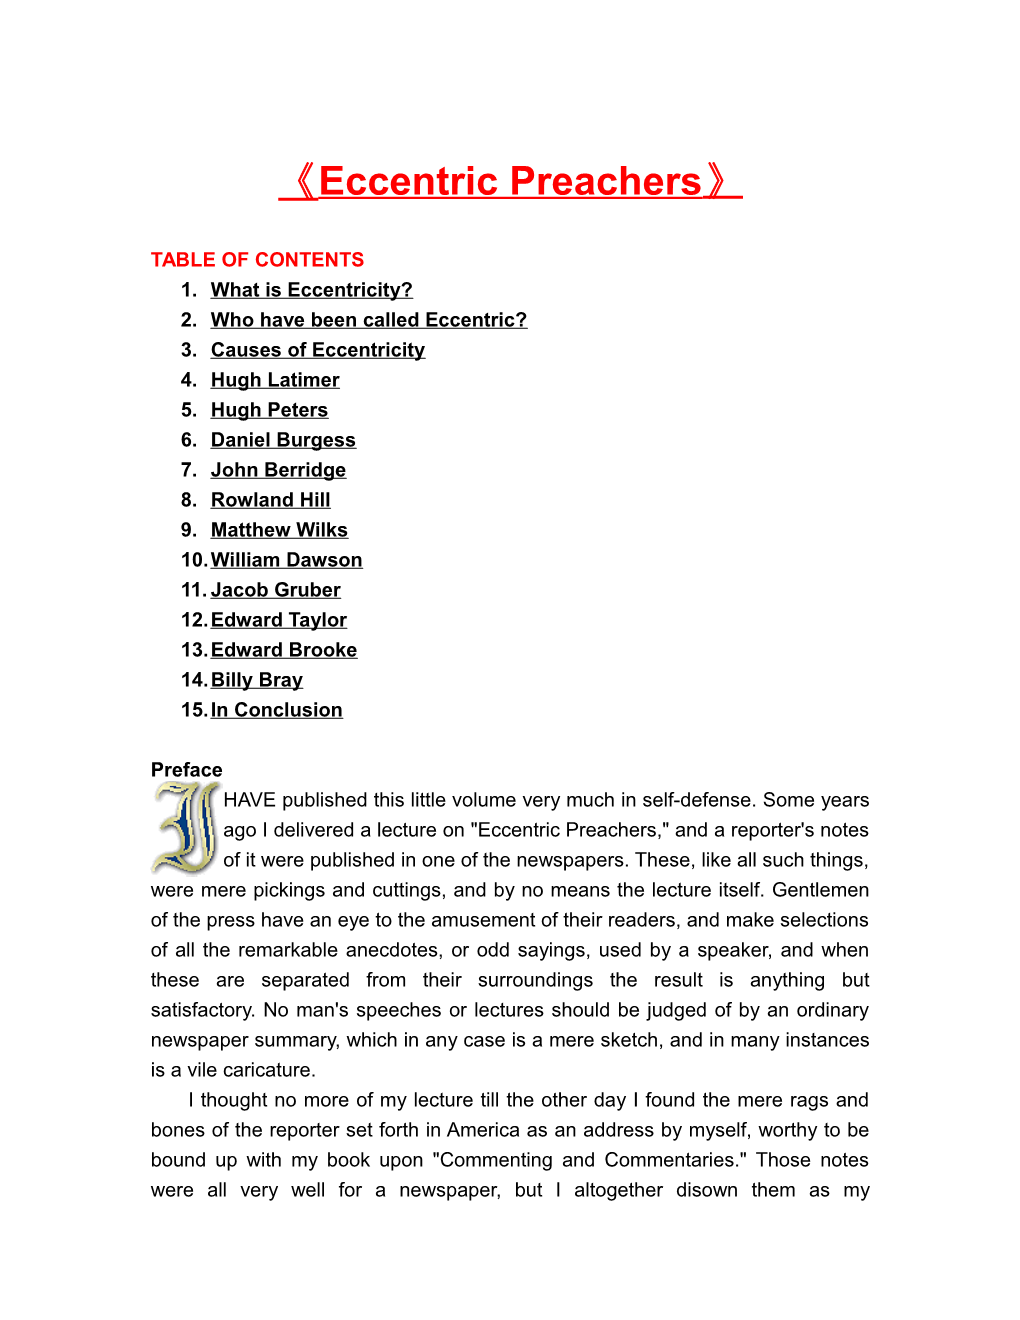 Eccentric Preachers